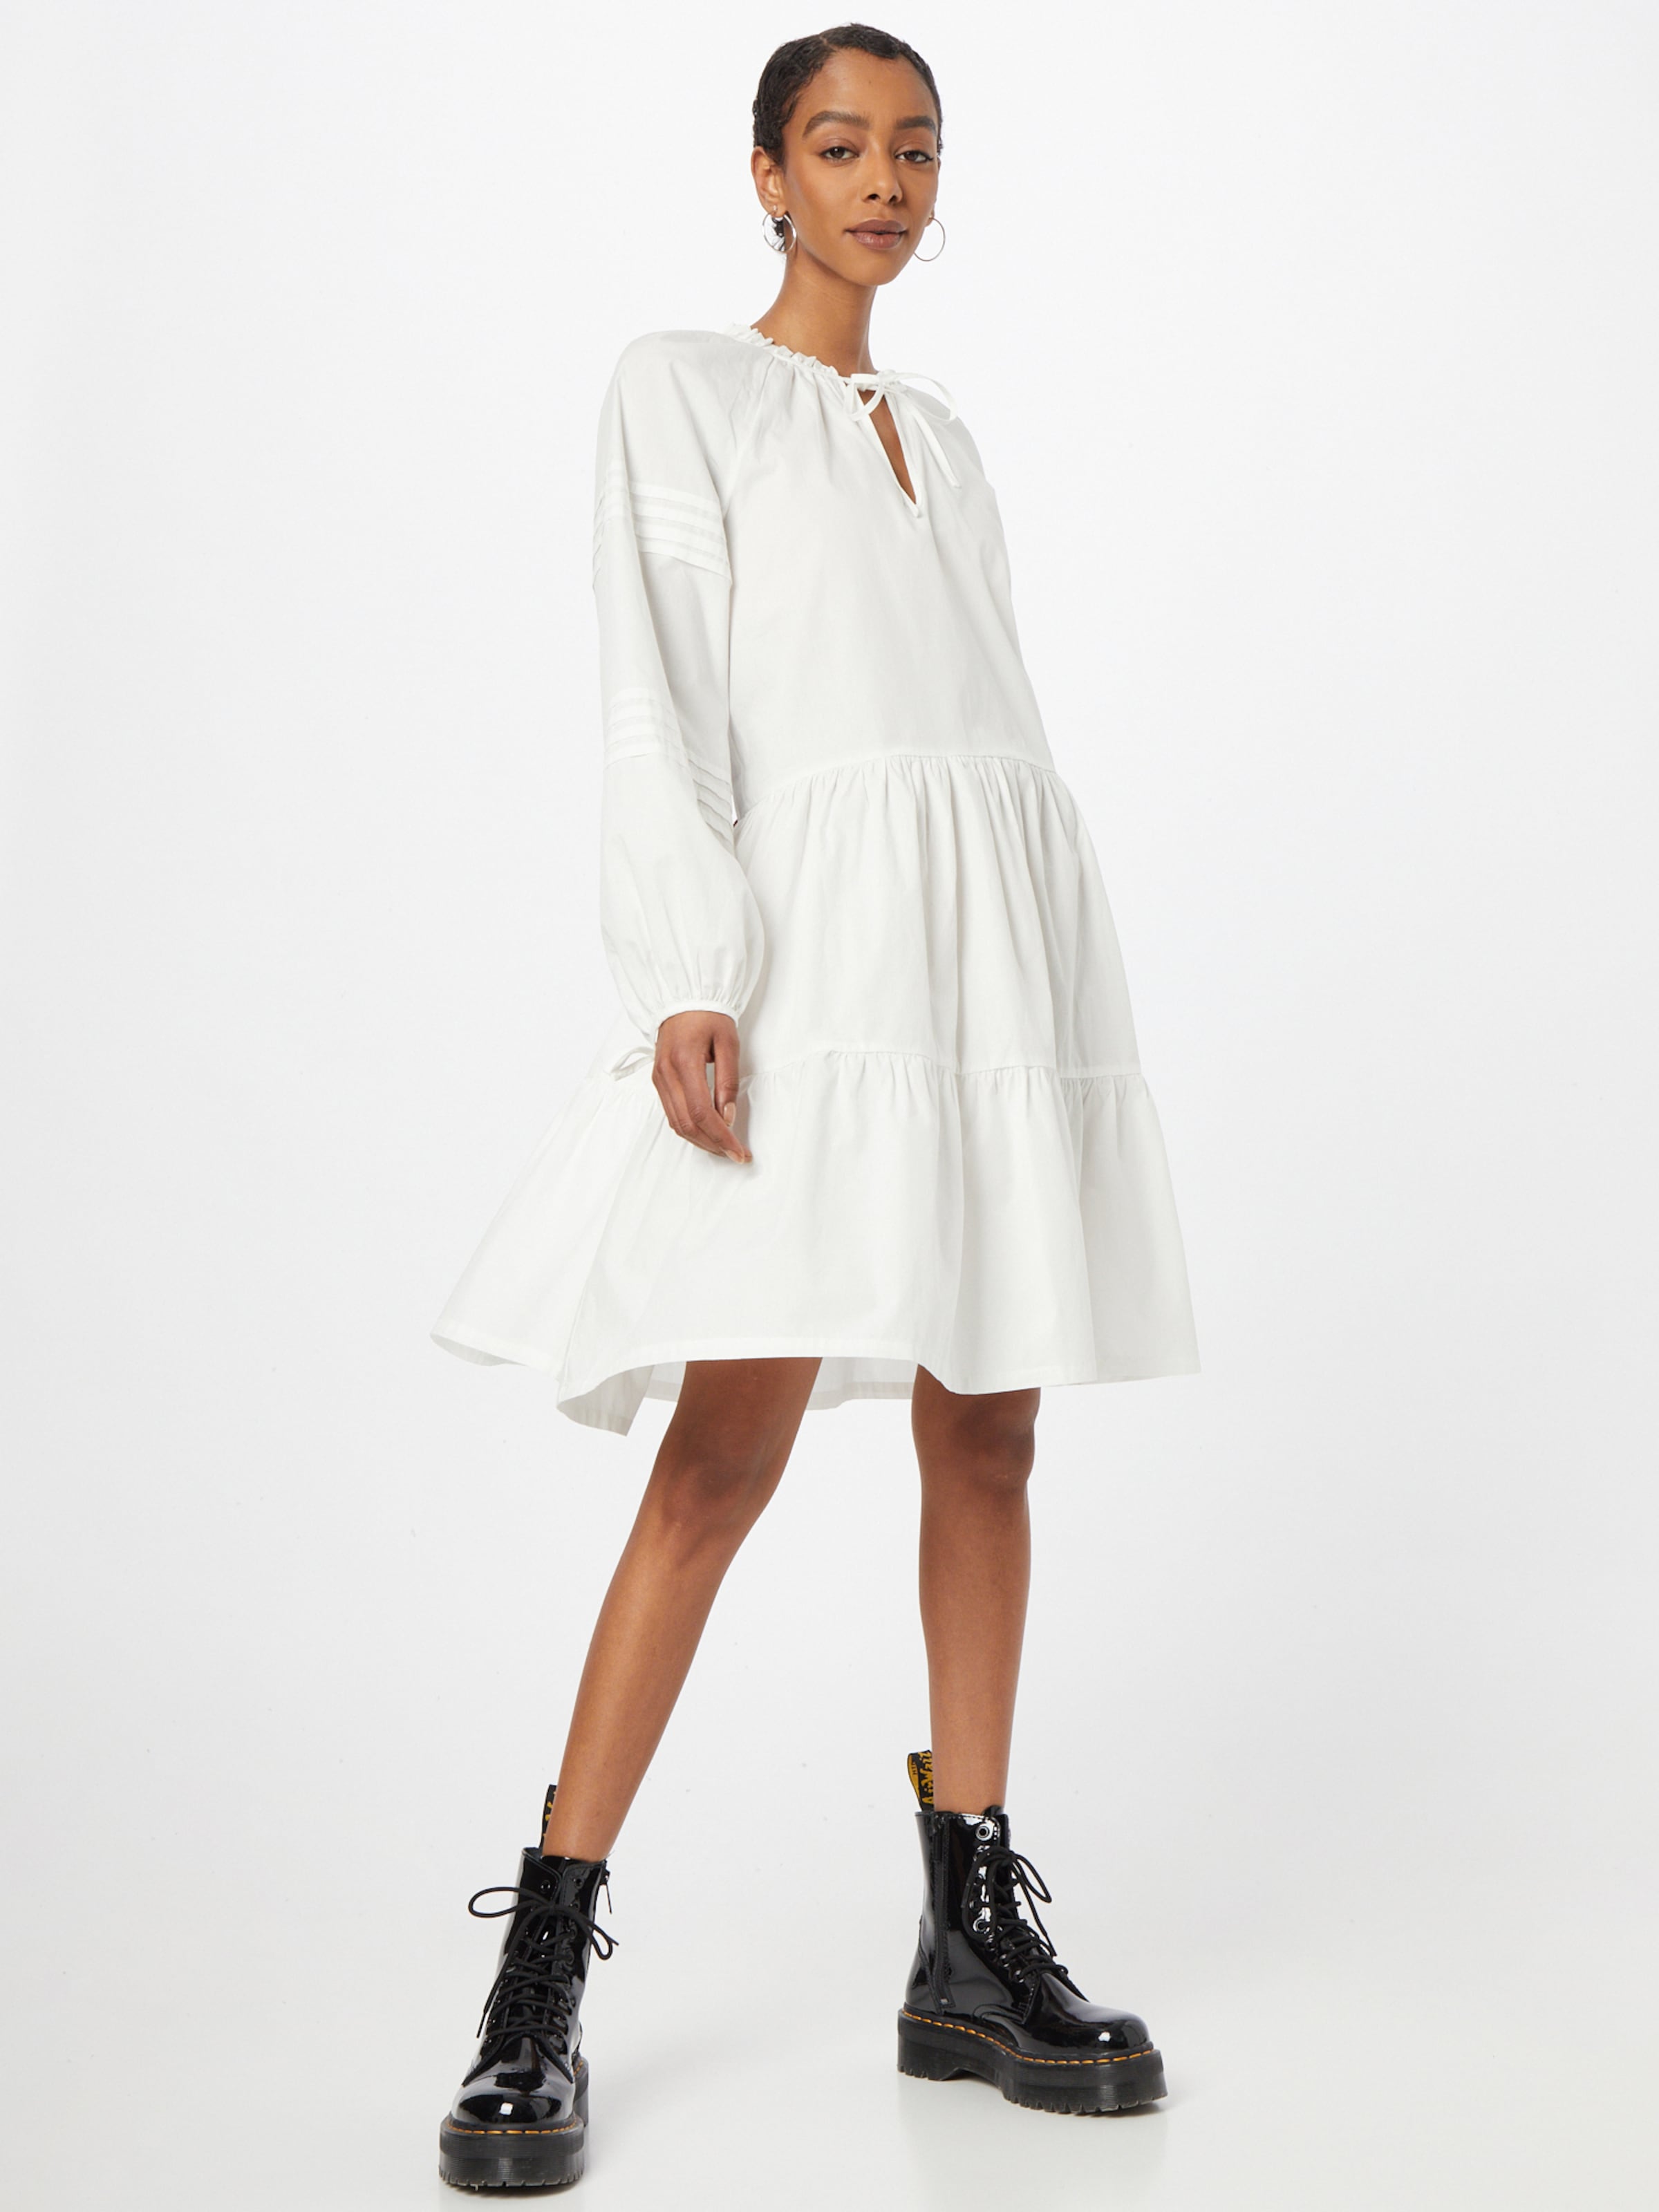 Frauen Kleider rosemunde Kleid in Weiß - GY91796